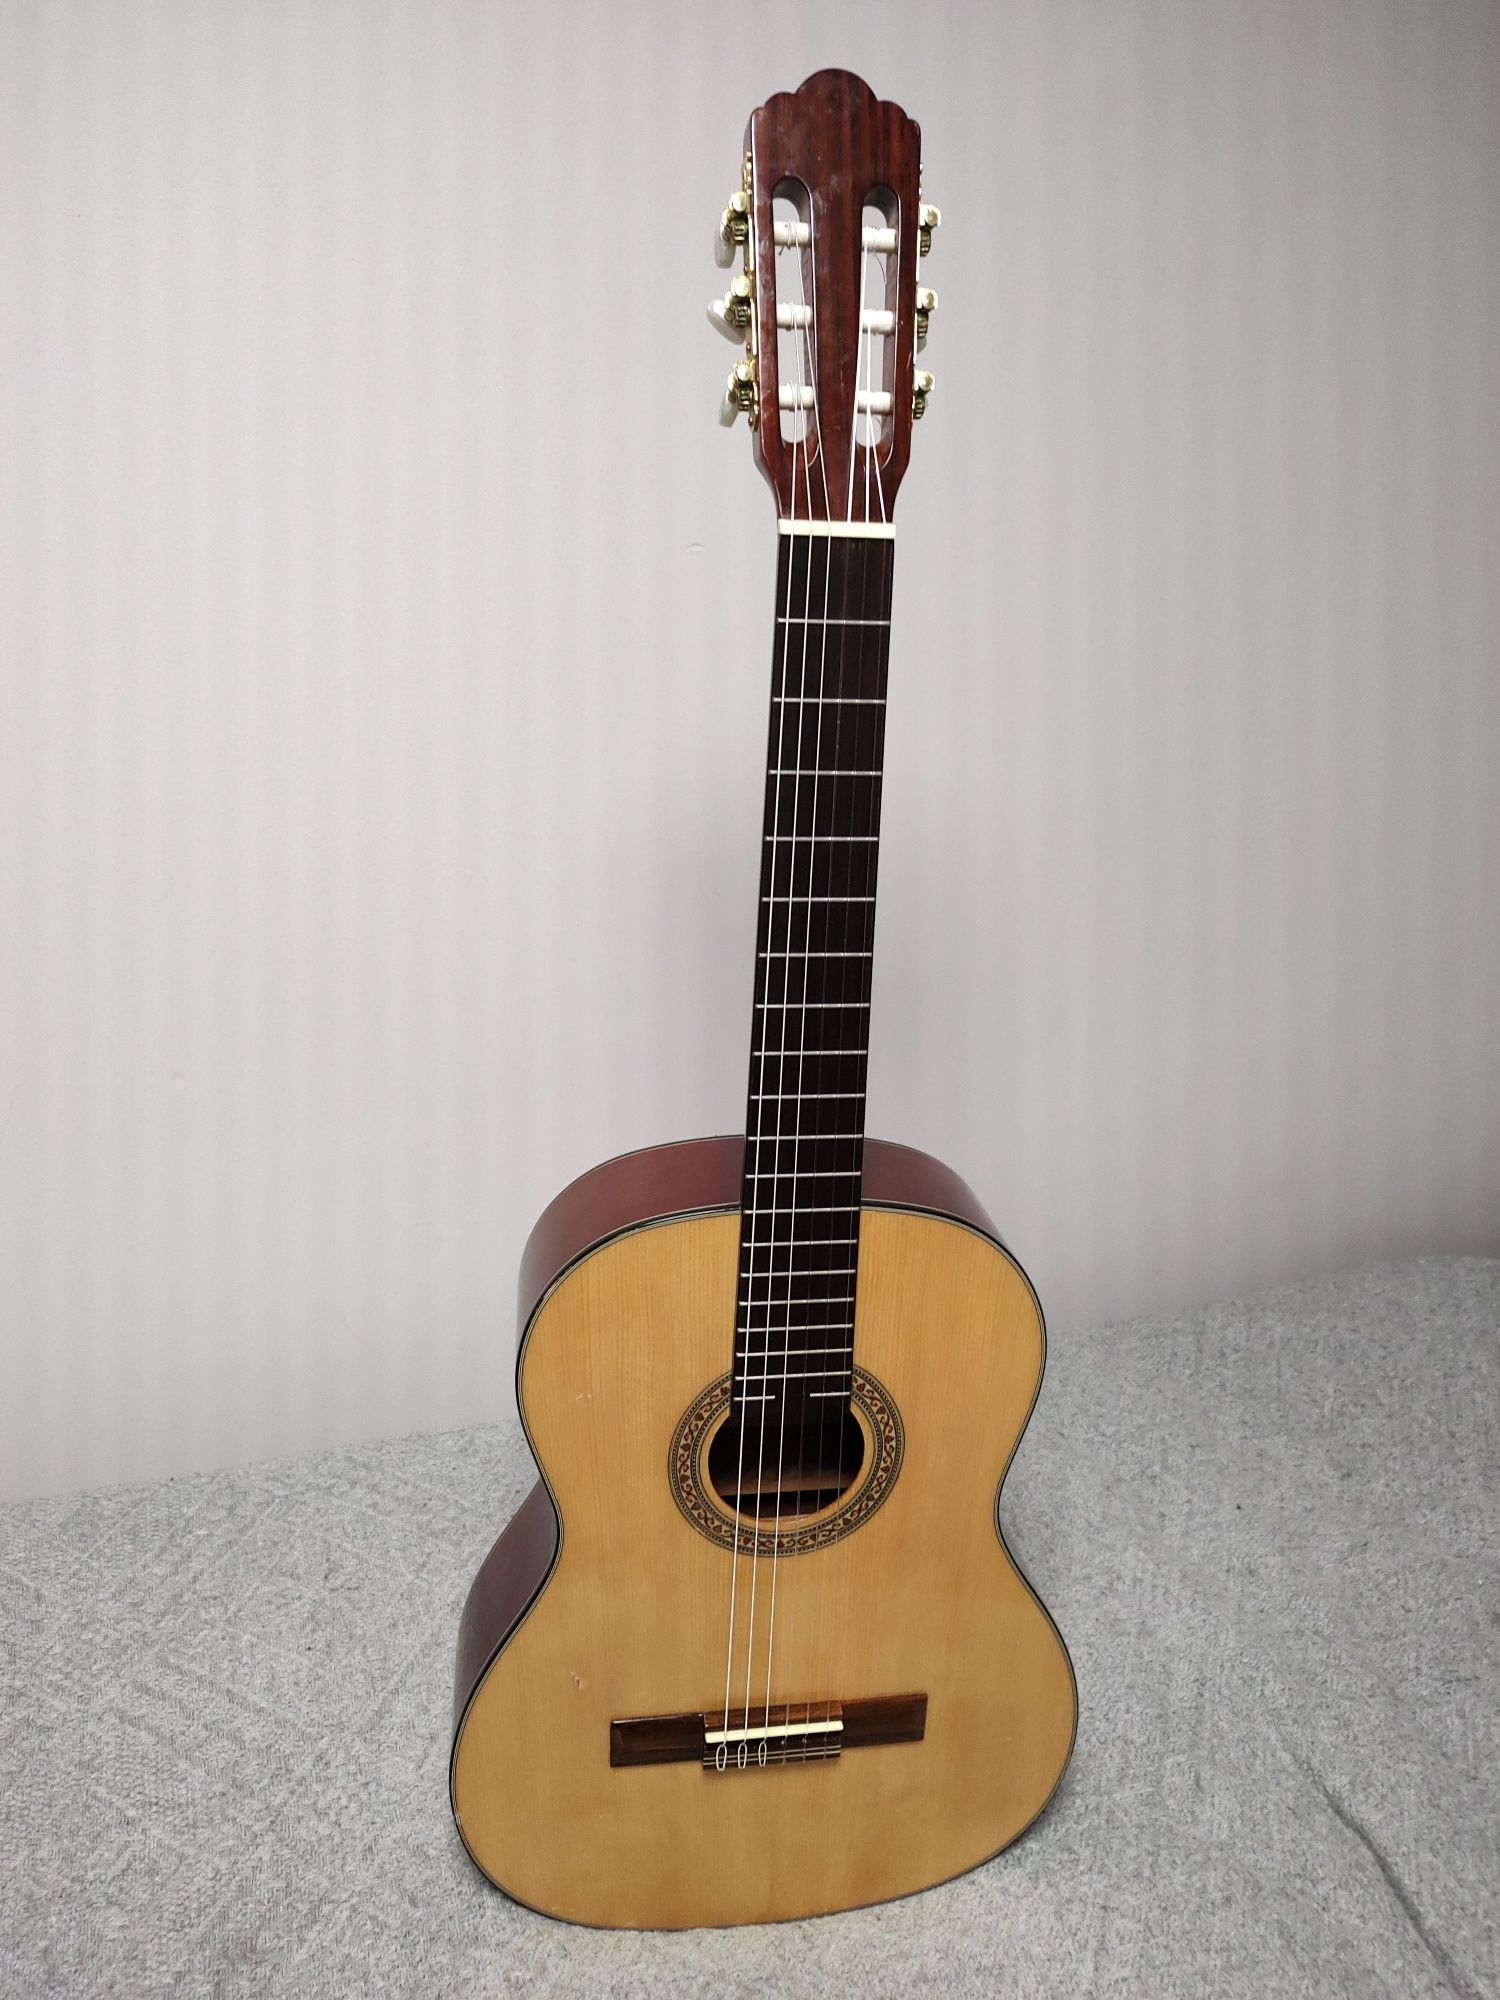 Lorca CG - 50 gitara klasyczna Piękna  Świetne brzmienie !!